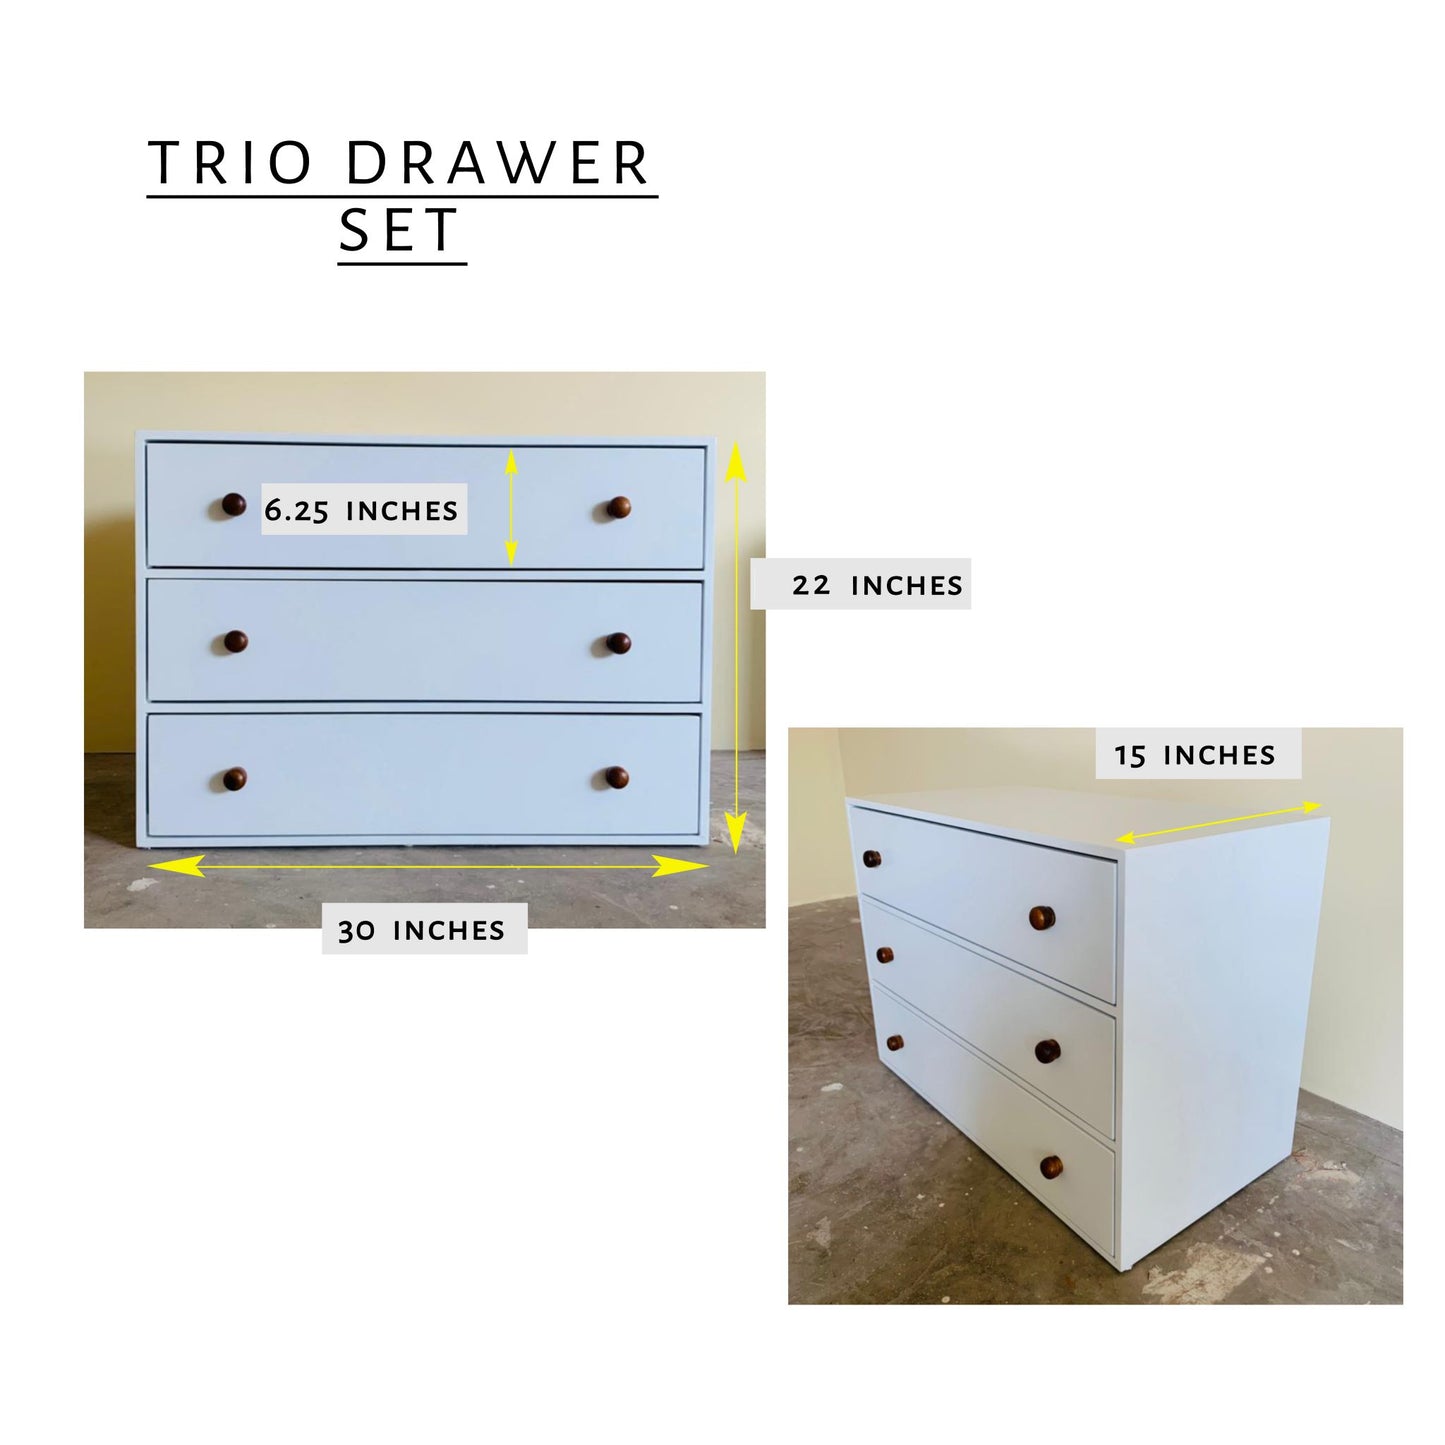 Trio Drawer Set